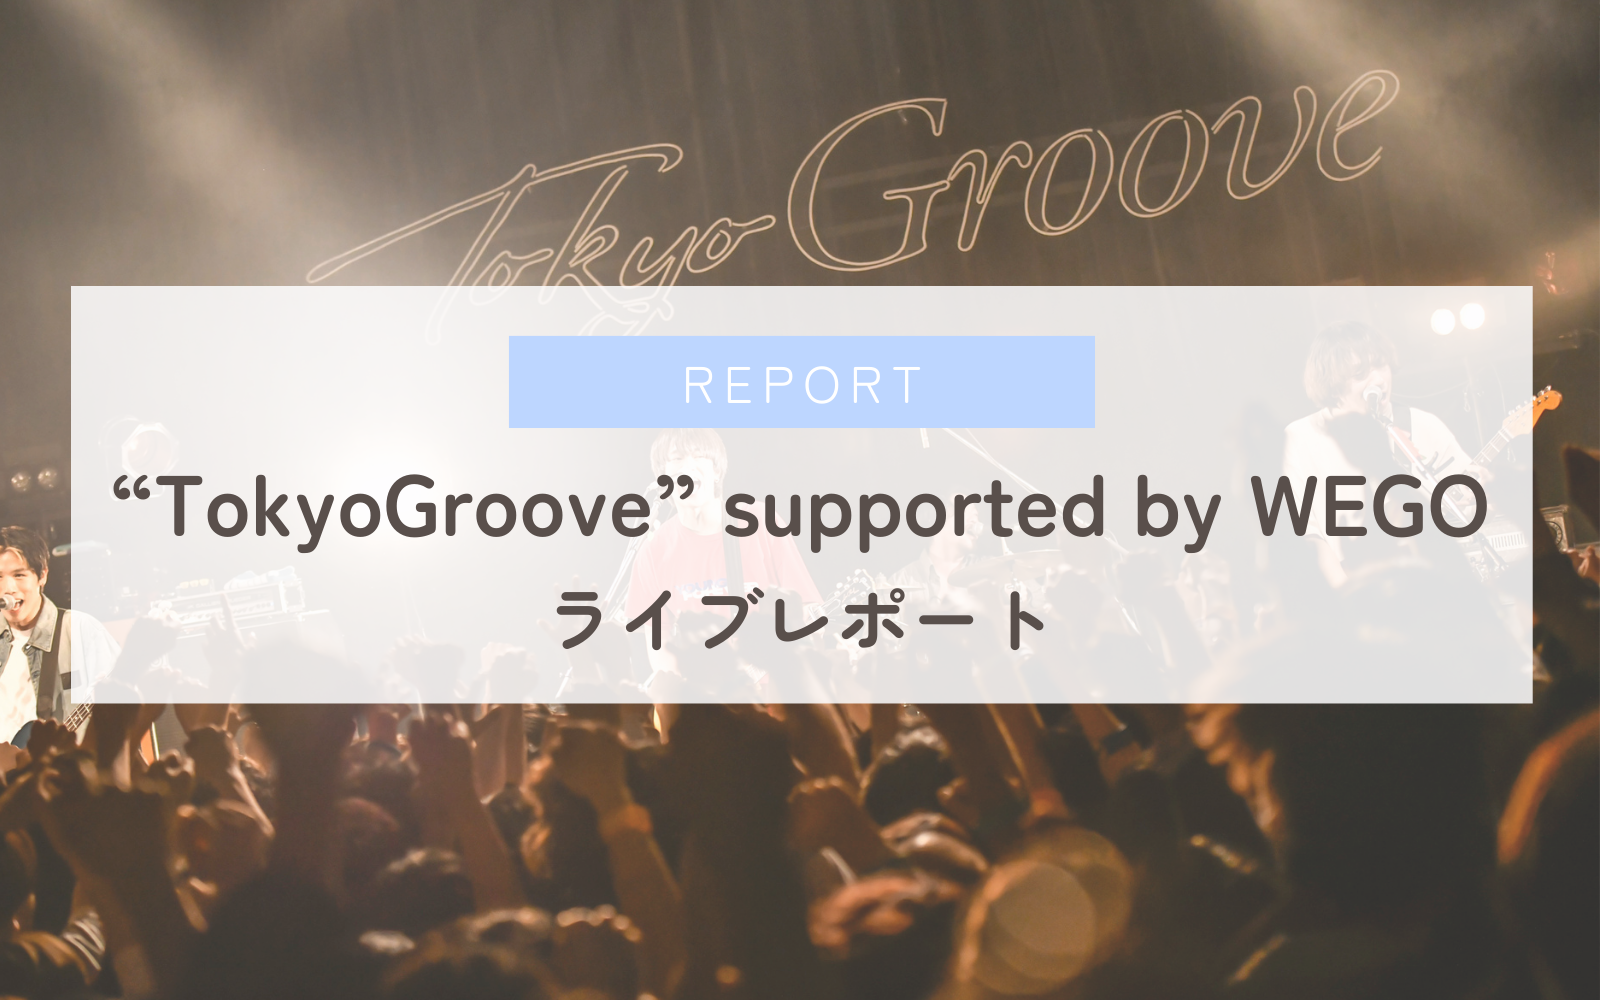 【ライブレポート】プッシュプルポット×This is LAST×サバシスター「“TokyoGroove” supported by WEGO」